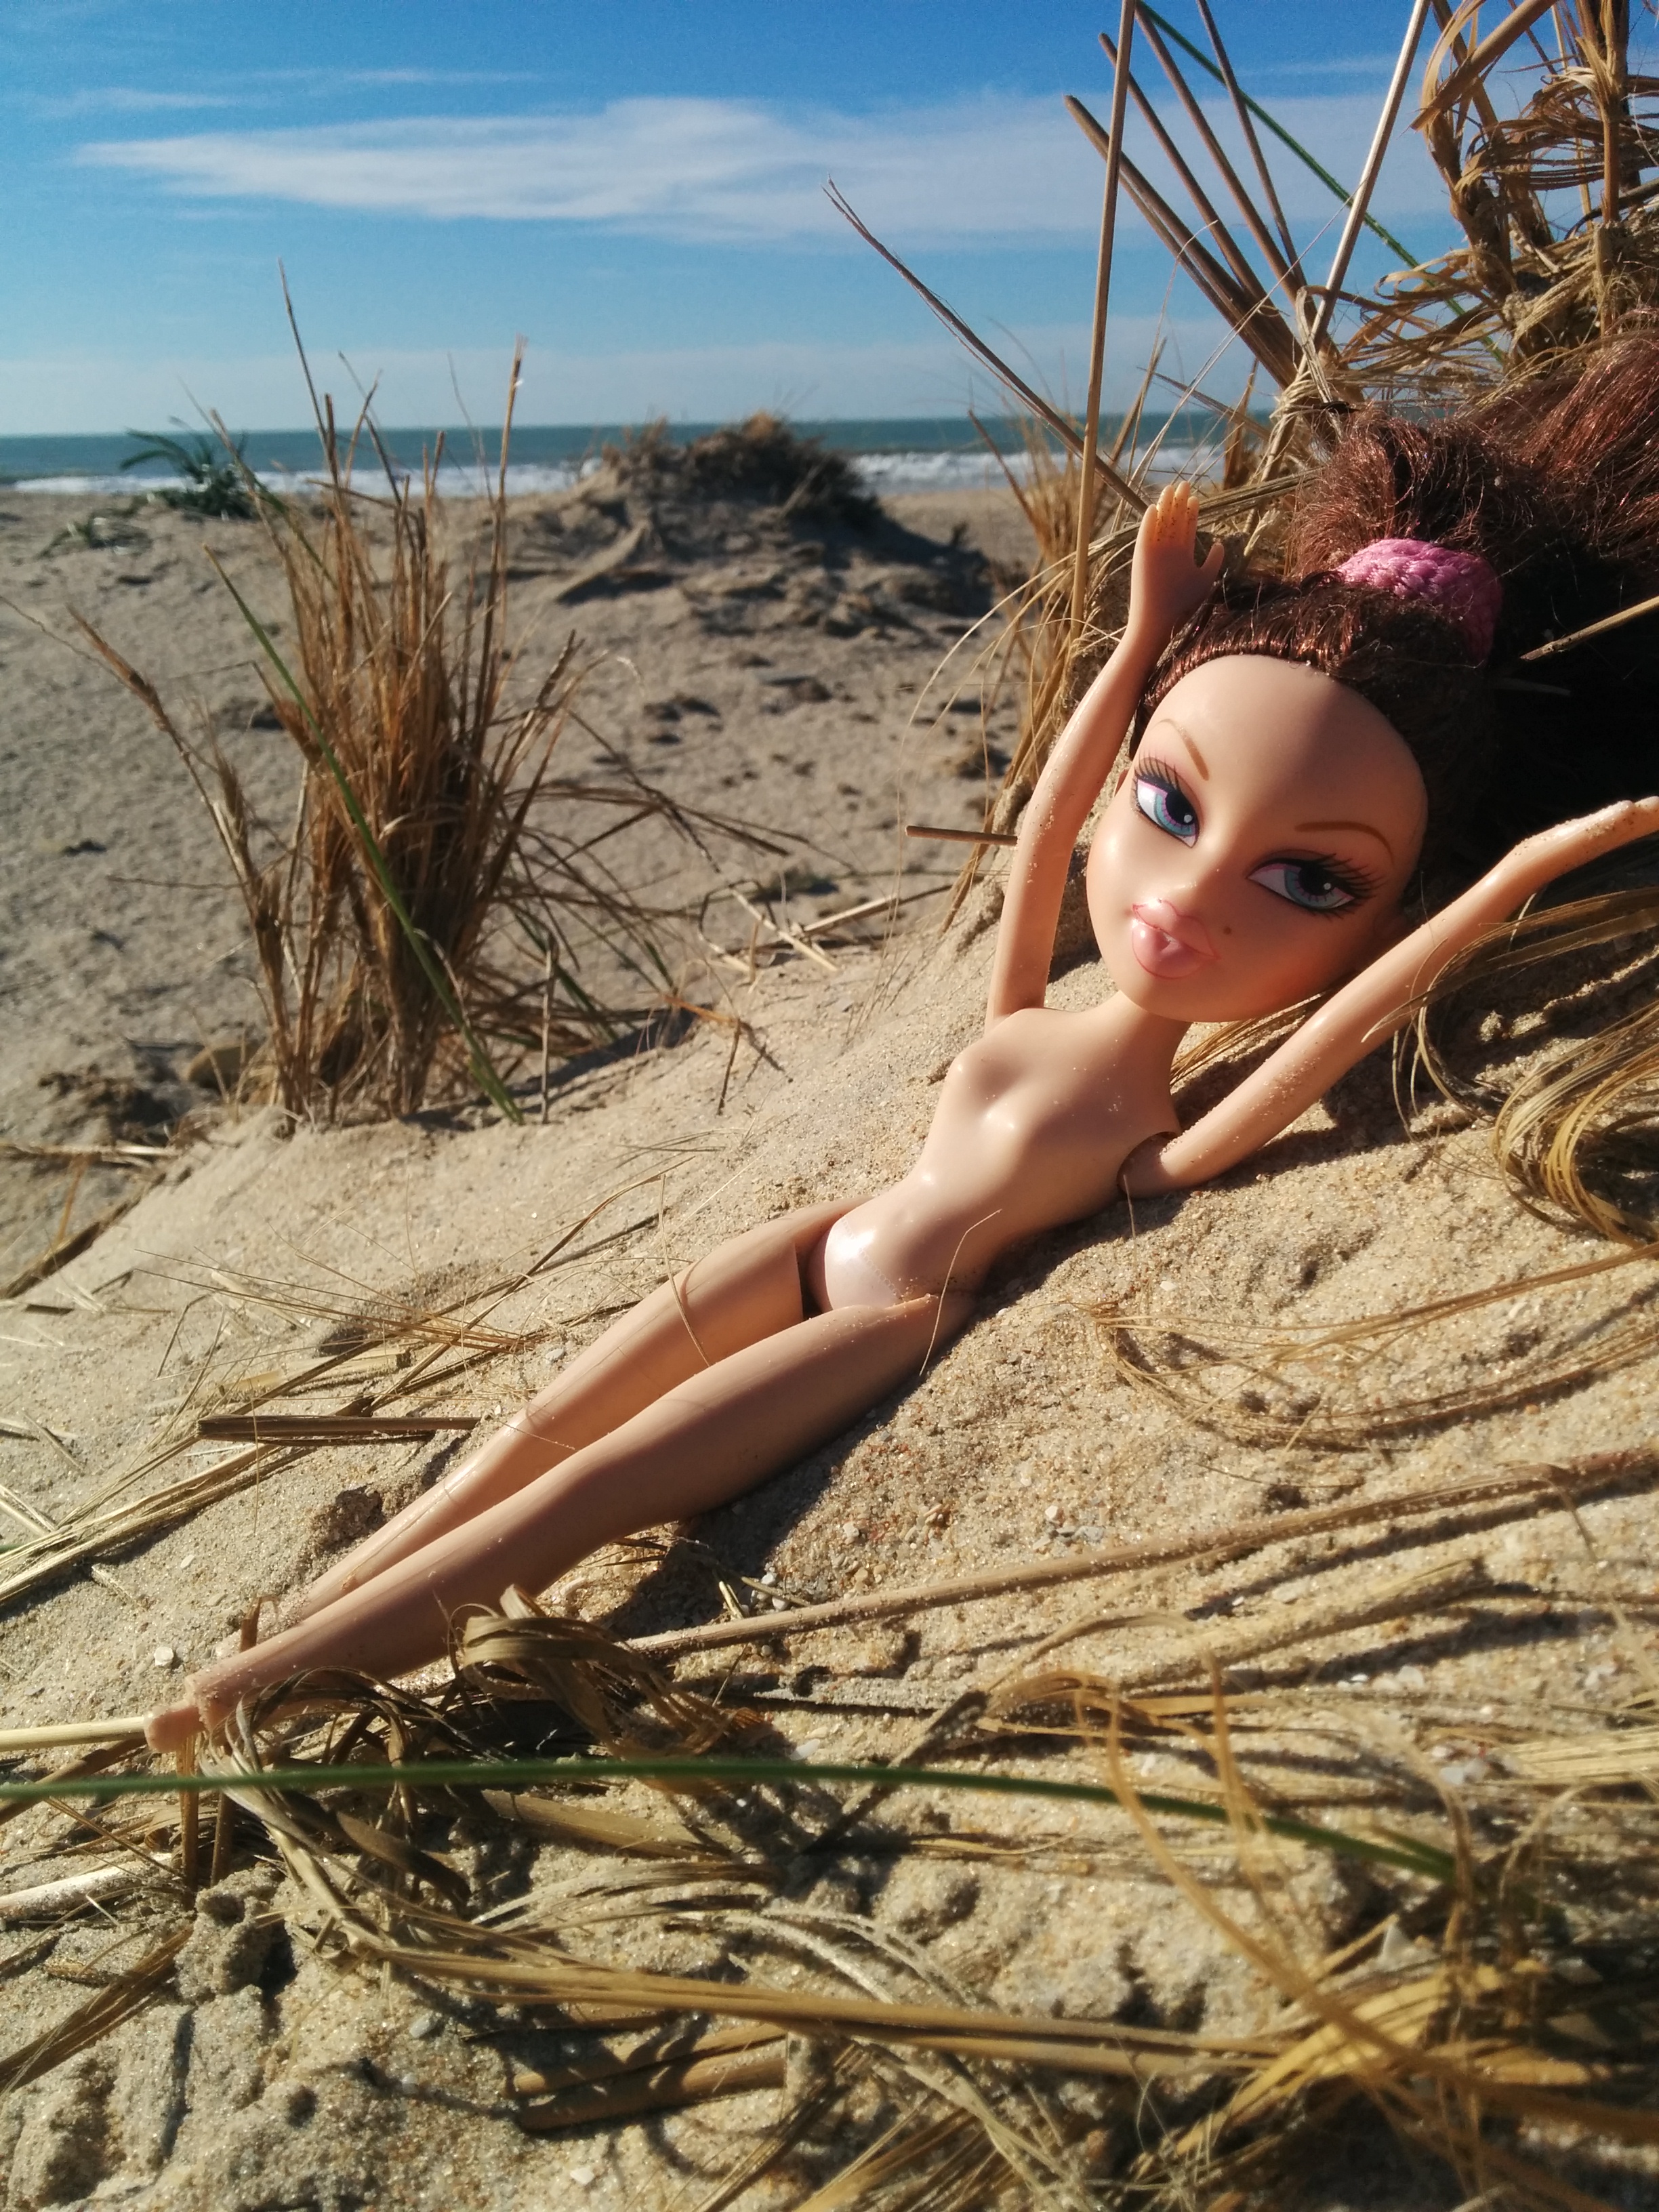 Abandonada en la playa, sobrevivía.